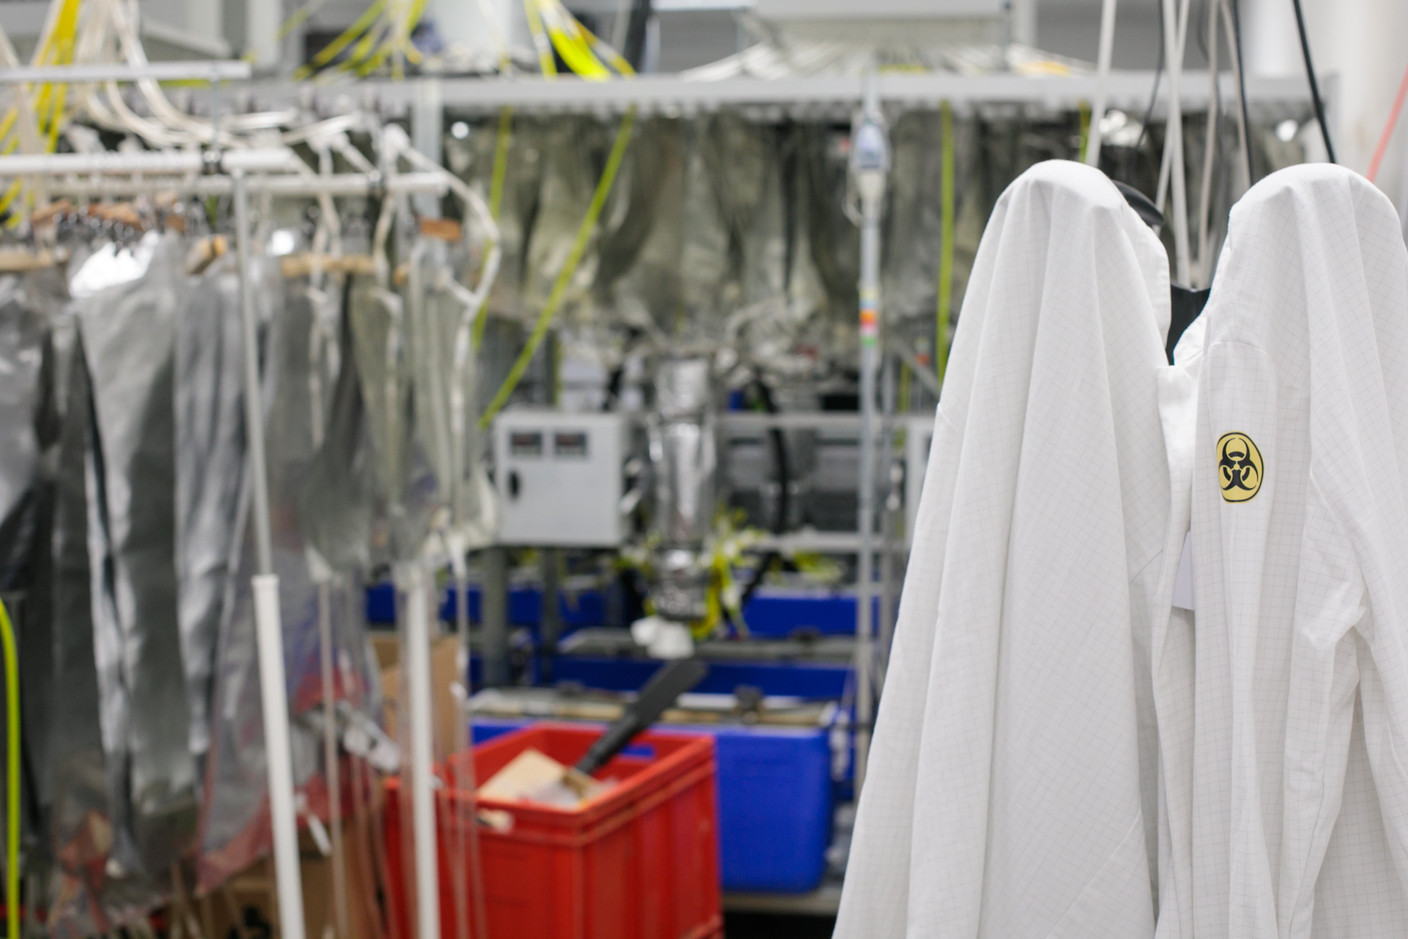 Dans le laboratoire de bioénergie, blouses blanches et bactéries coexistent au service de la production d’énergies issues de l’économie circulaire. (Photo: Matic Zorman/Maison Moderne)